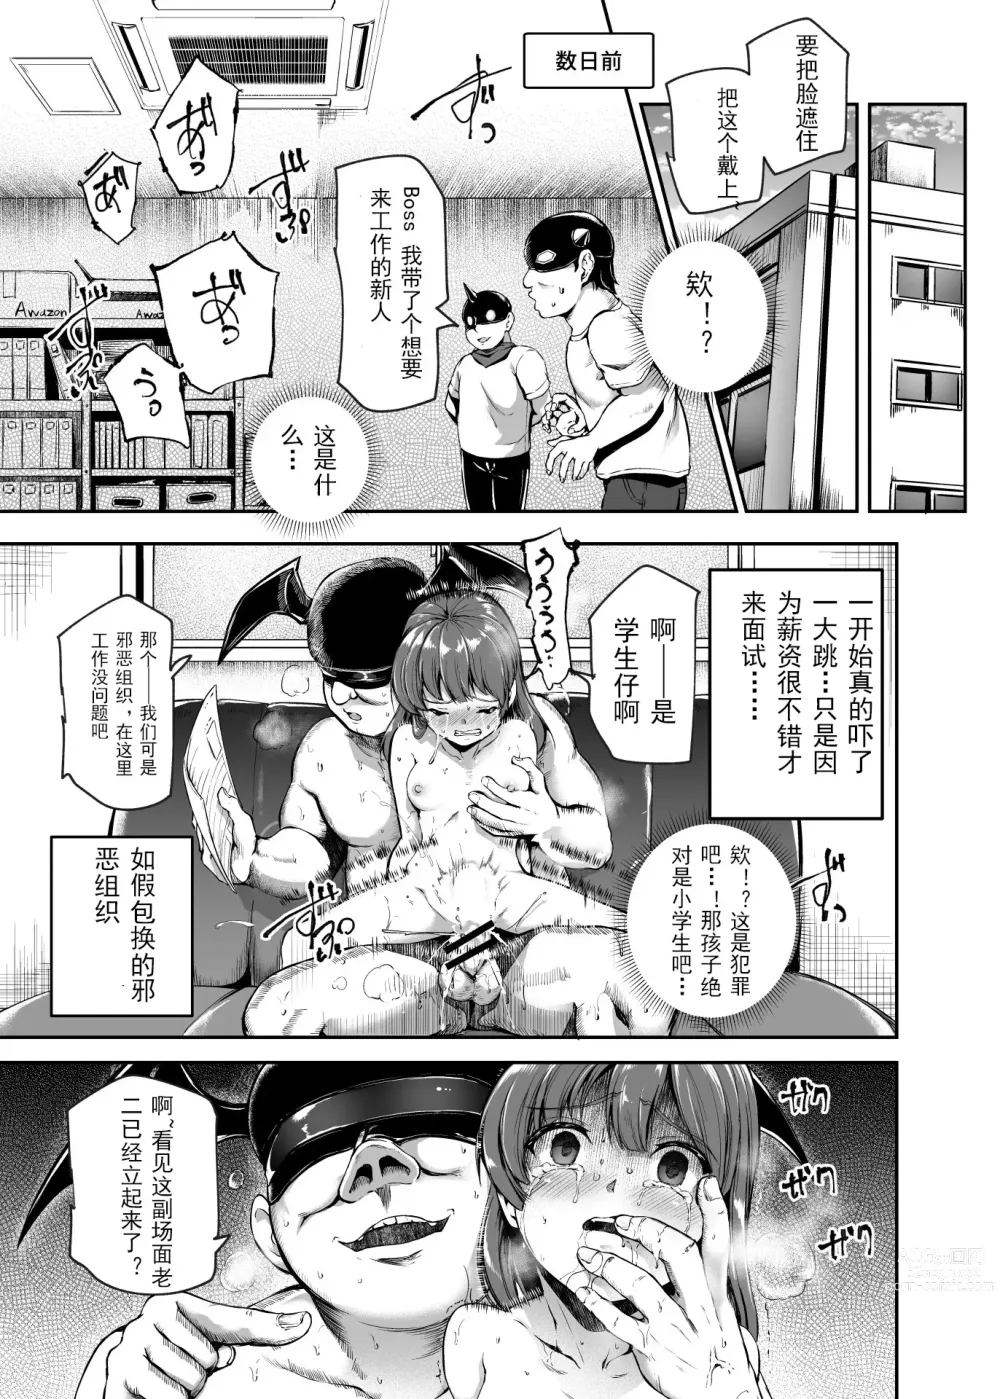 Page 7 of doujinshi 进入邪恶组织工作的话，就可以放肆享受女人性爱自助了吗?EX